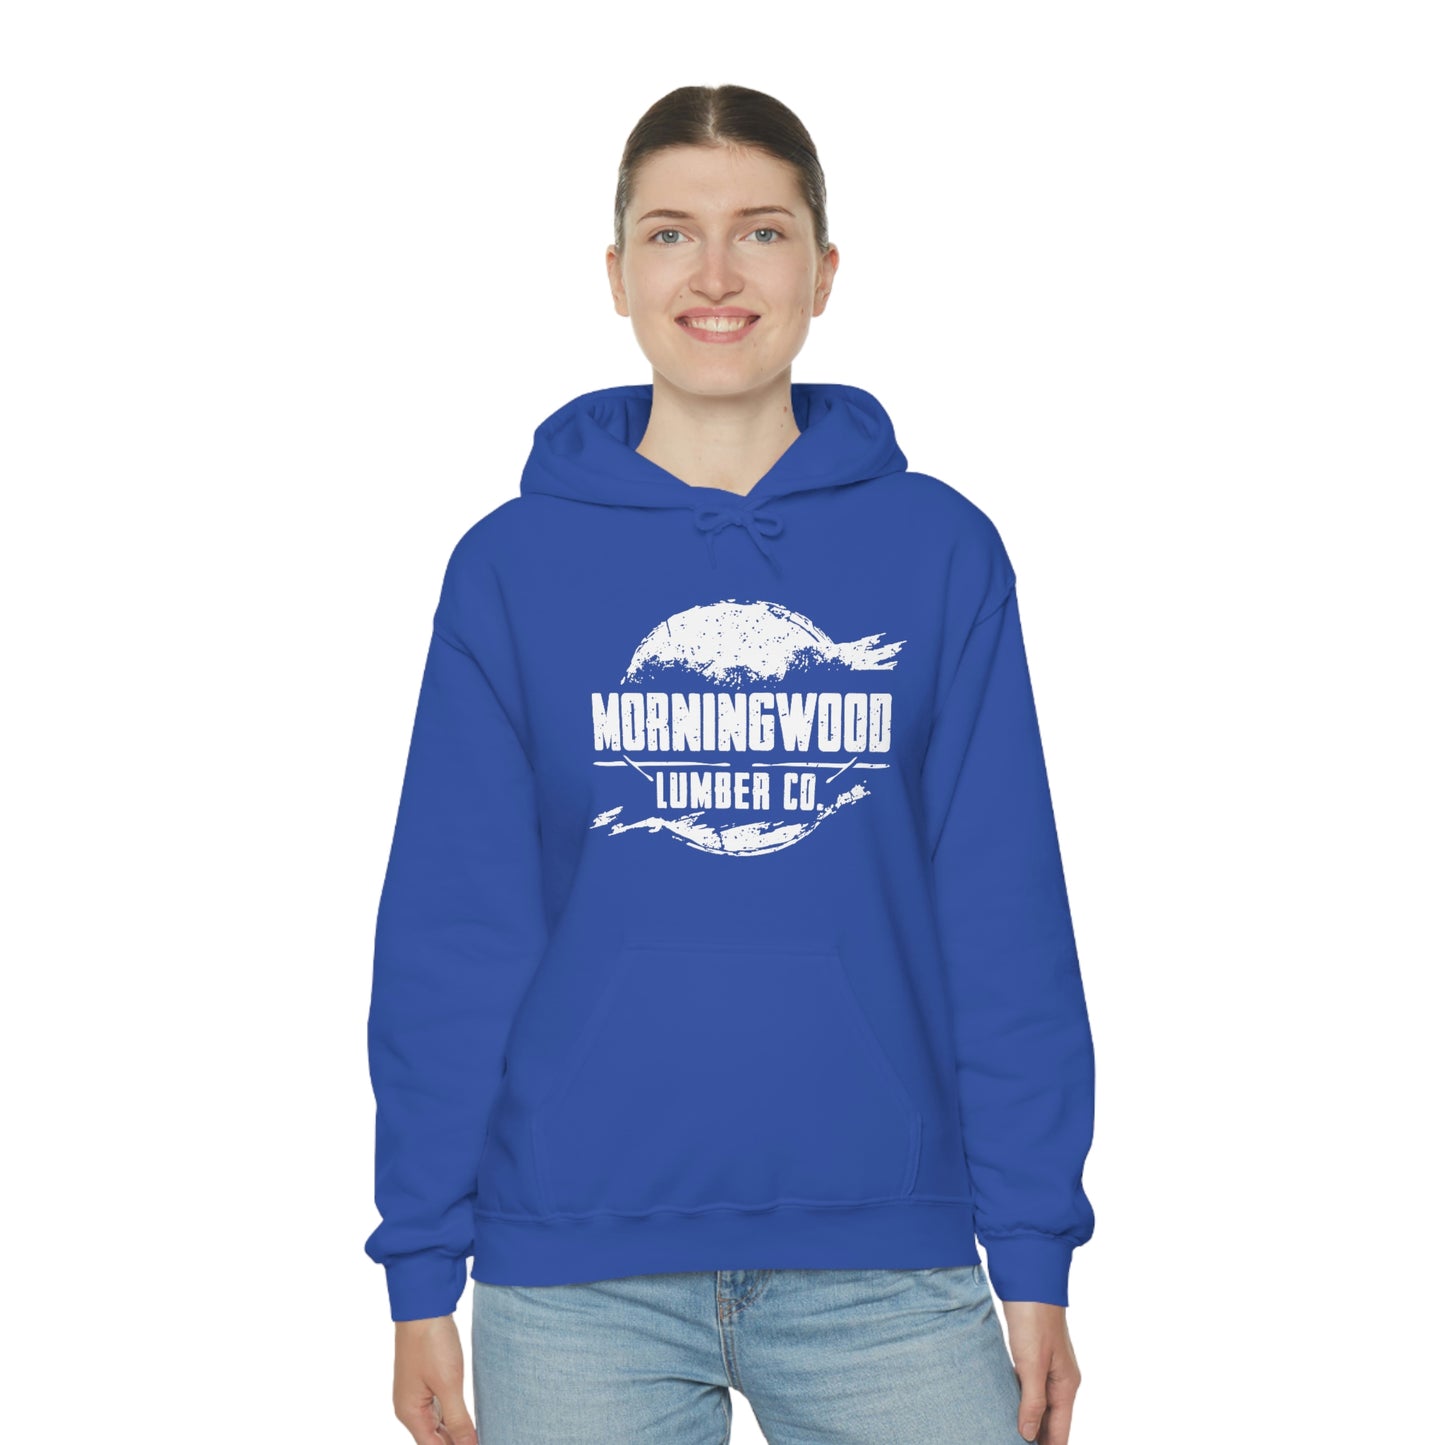 Morningwood Lumber Co. Hooded Sweatshirt